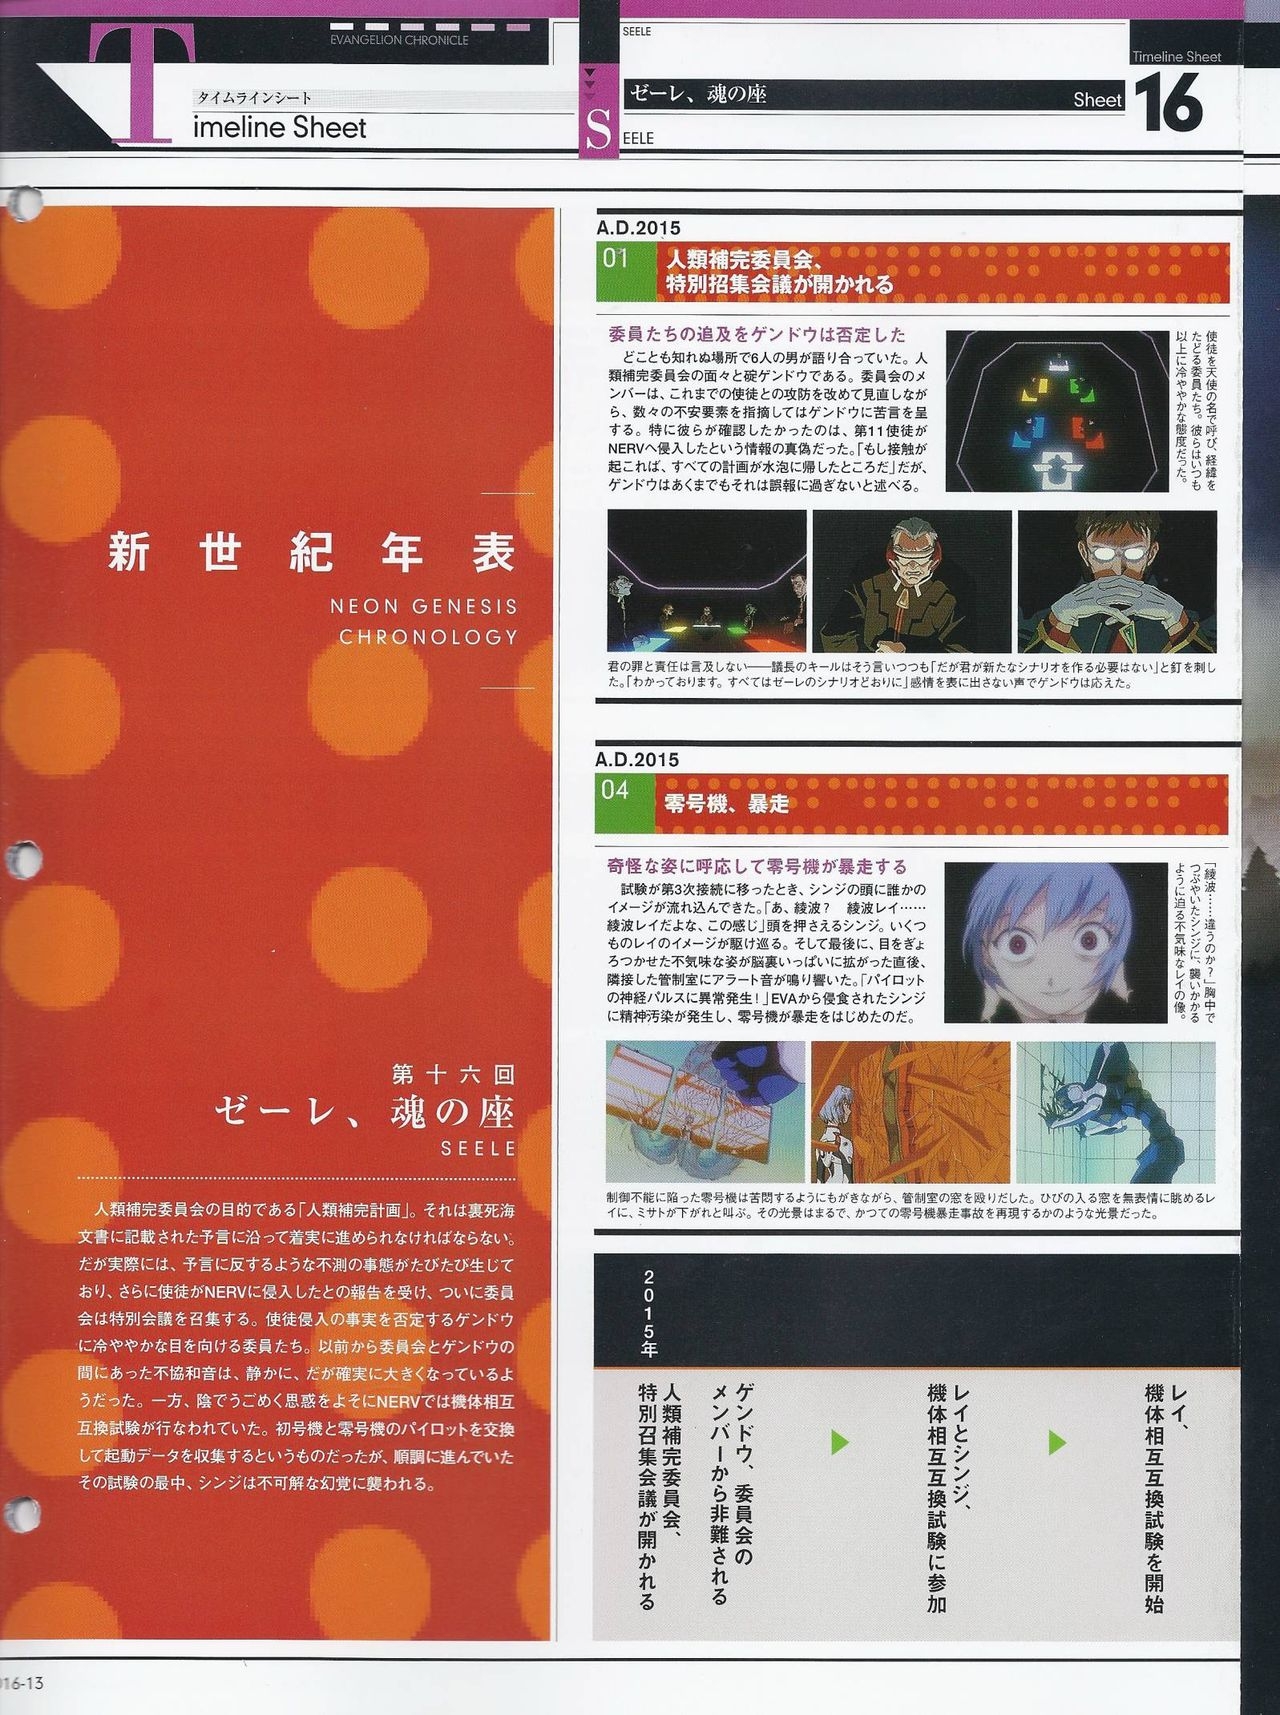 Neon Genesis Evangelion - Chronicle 16 13